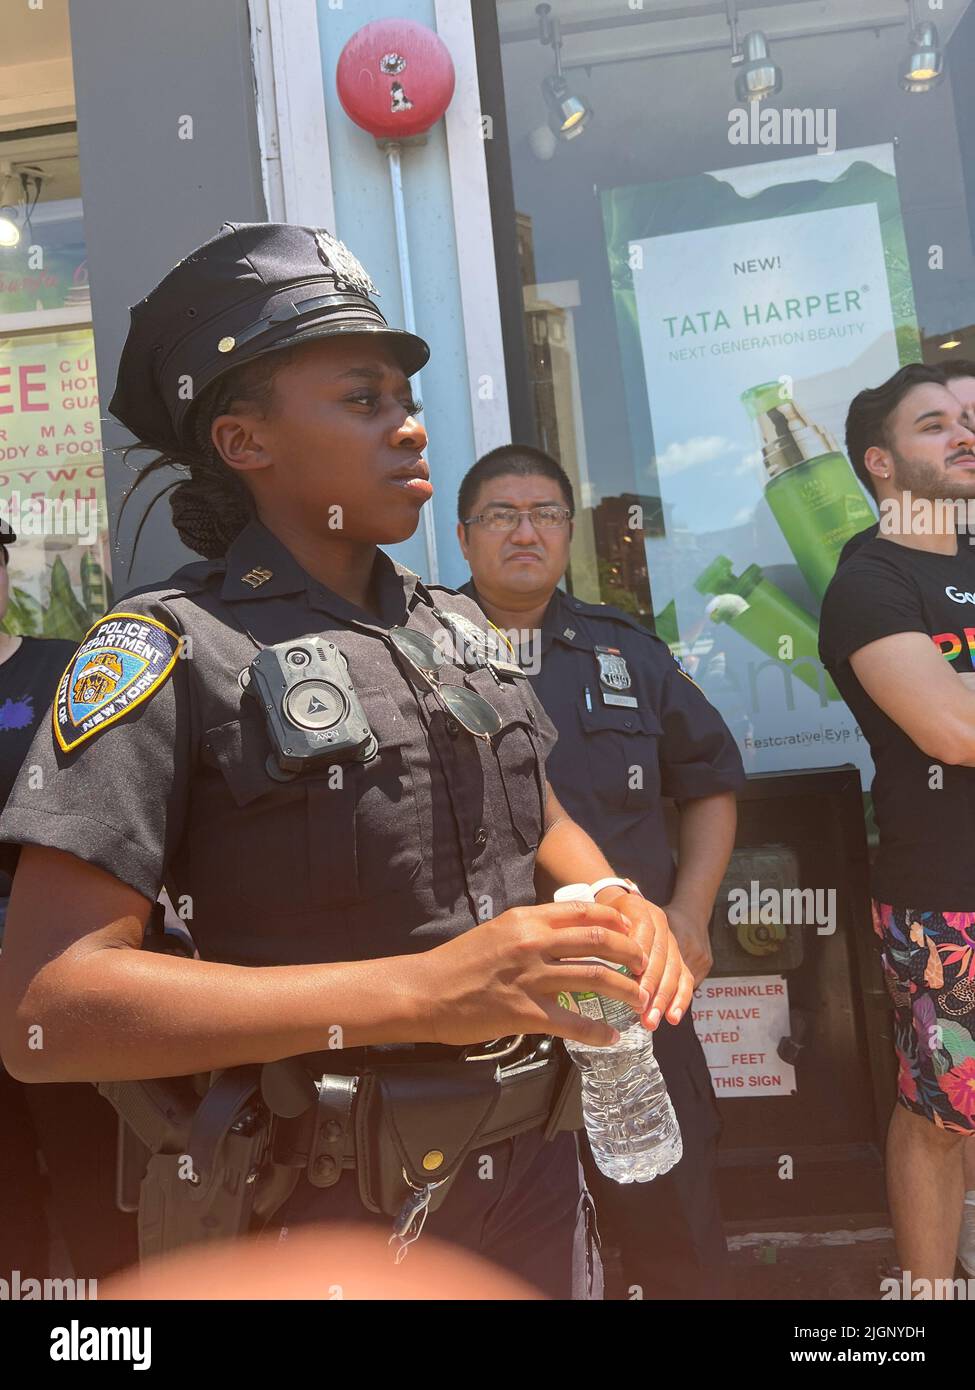 Le défilé annuel gay Pride revient en mars sur 5th Avenue et se termine sur Christopher Street dans Greenwich Village après une pause de 3 ans en raison de la pandémie Covid-19. Une femme officier de police de NYPD se patrouille à la parade. Banque D'Images